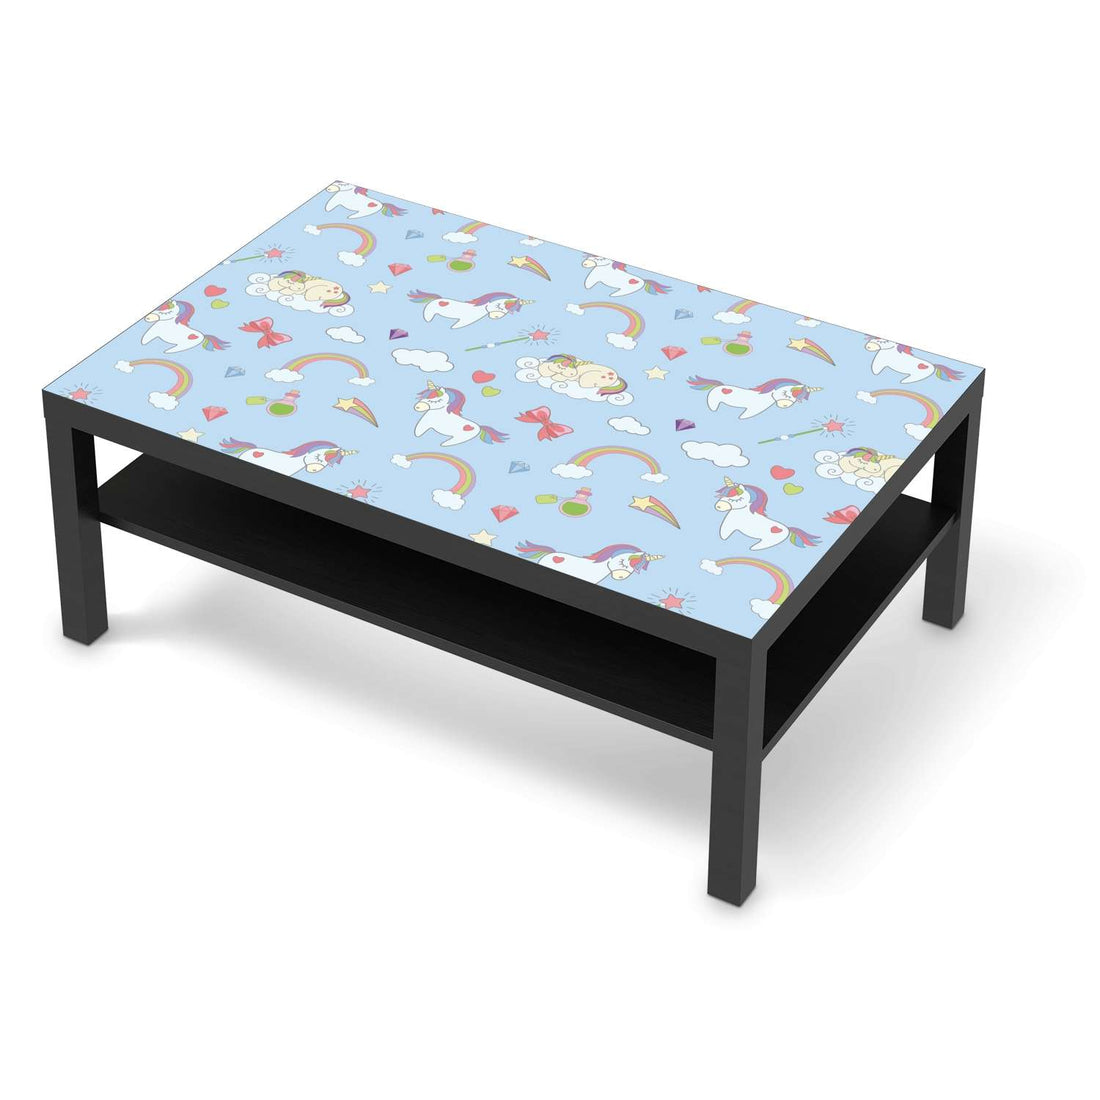 Klebefolie Rainbow Unicorn - IKEA Lack Tisch 118x78 cm - schwarz